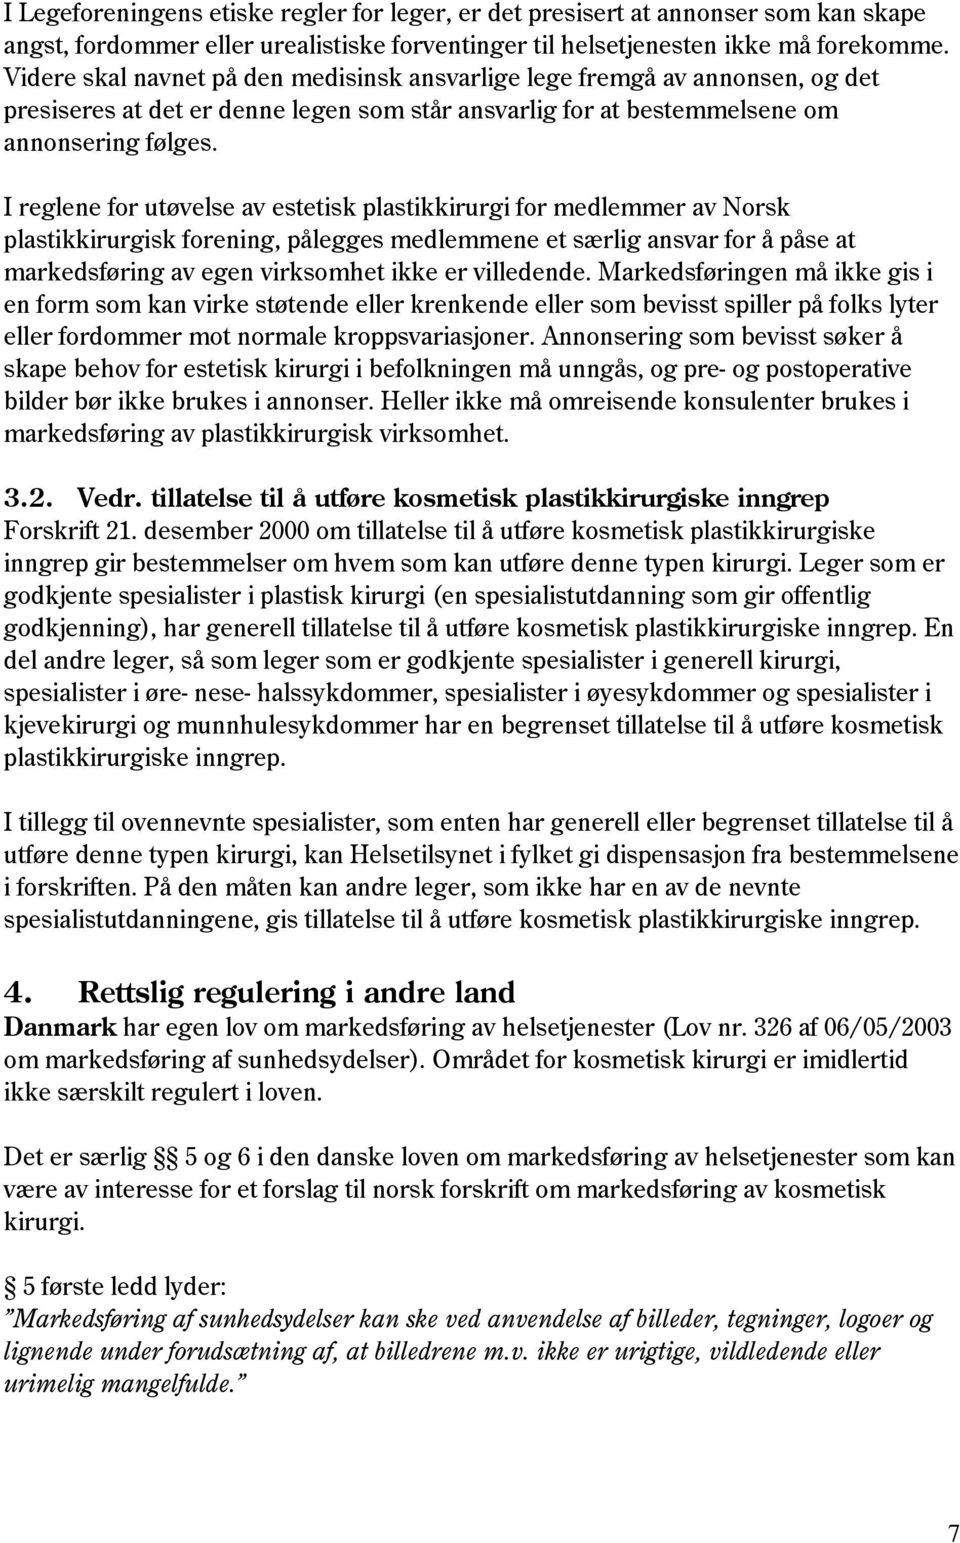 I reglene for utøvelse av estetisk plastikkirurgi for medlemmer av Norsk plastikkirurgisk forening, pålegges medlemmene et særlig ansvar for å påse at markedsføring av egen virksomhet ikke er